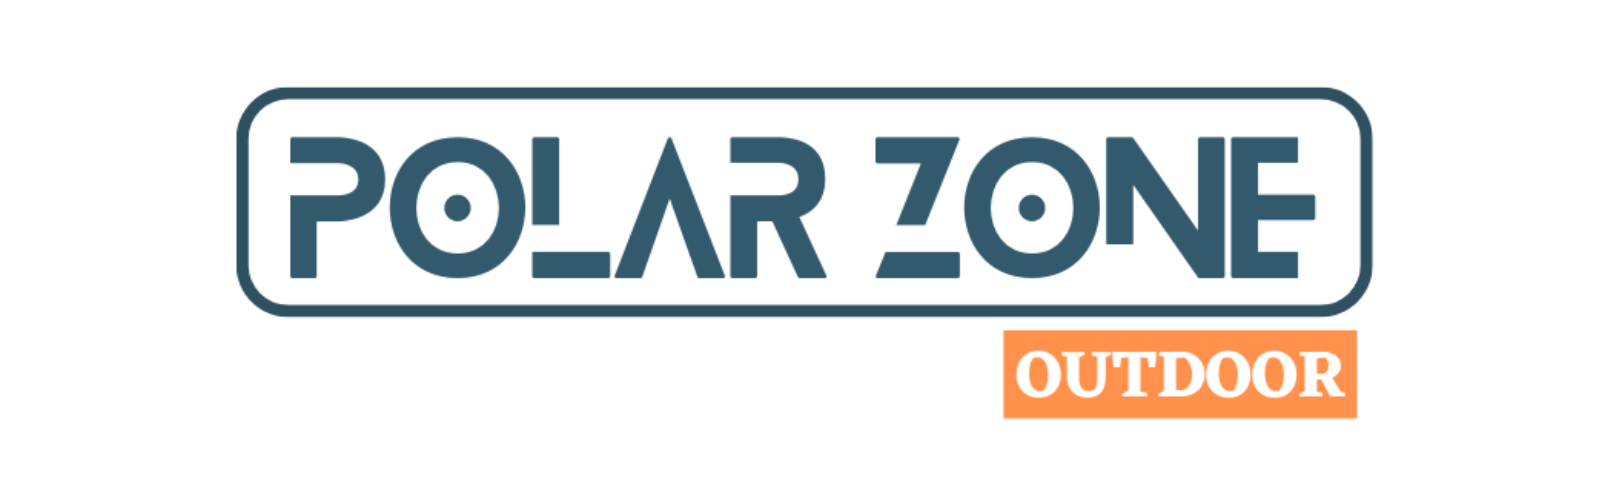 Polarzone